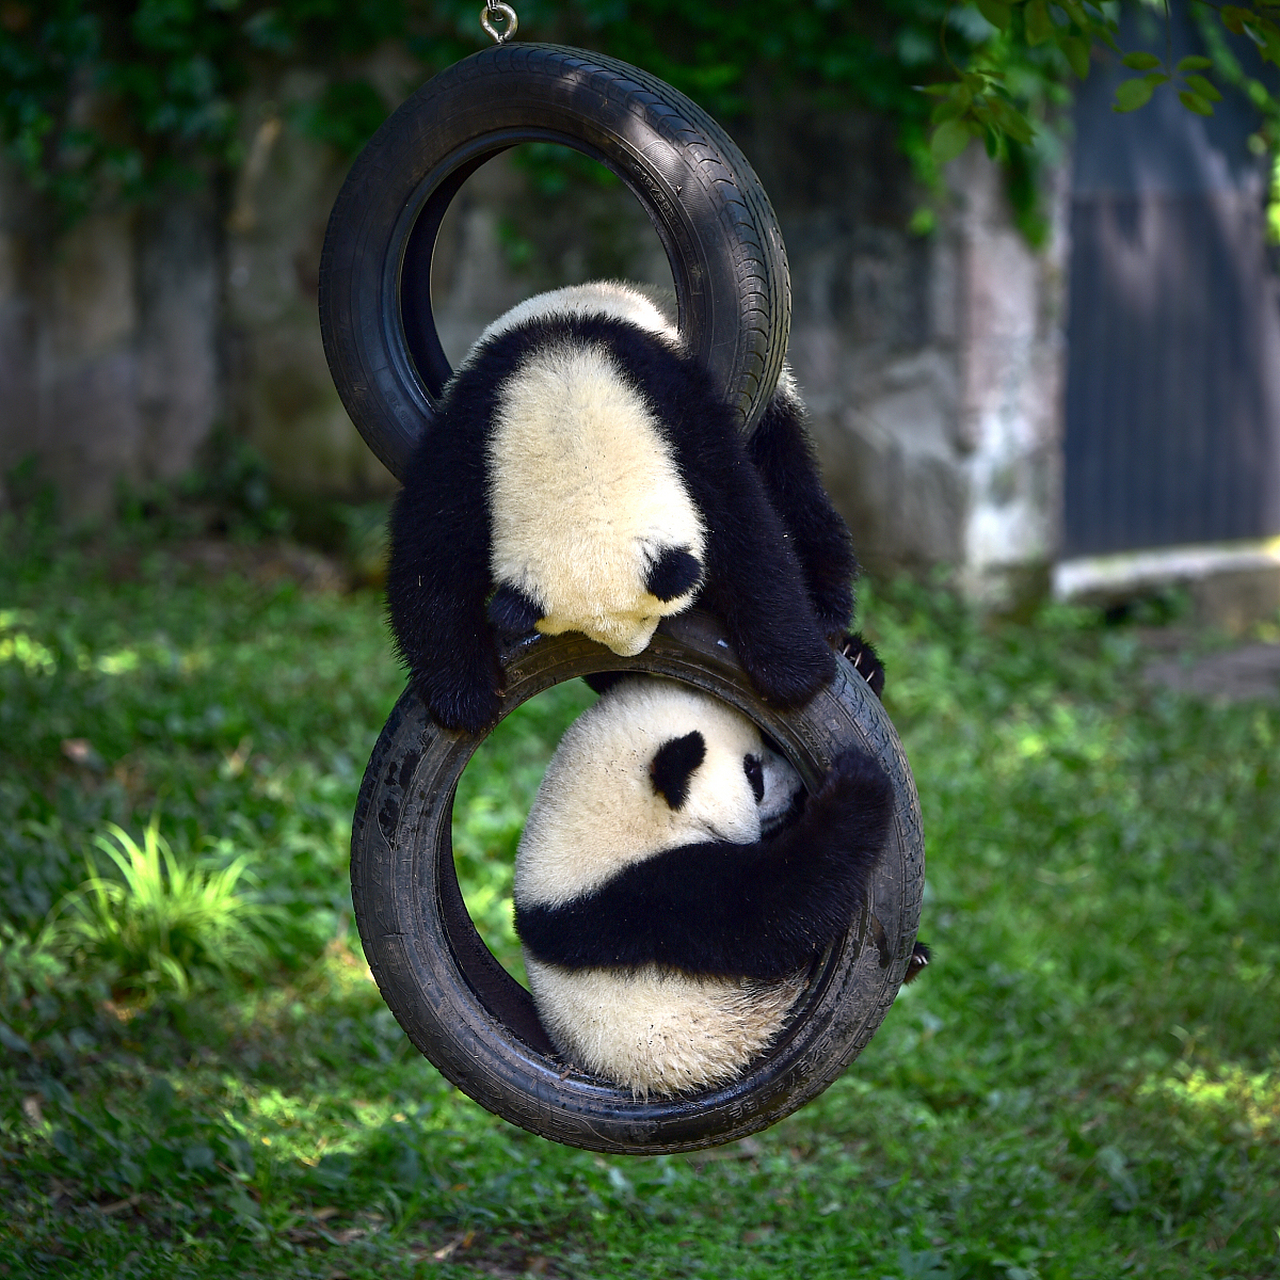 两个熊猫照片图片